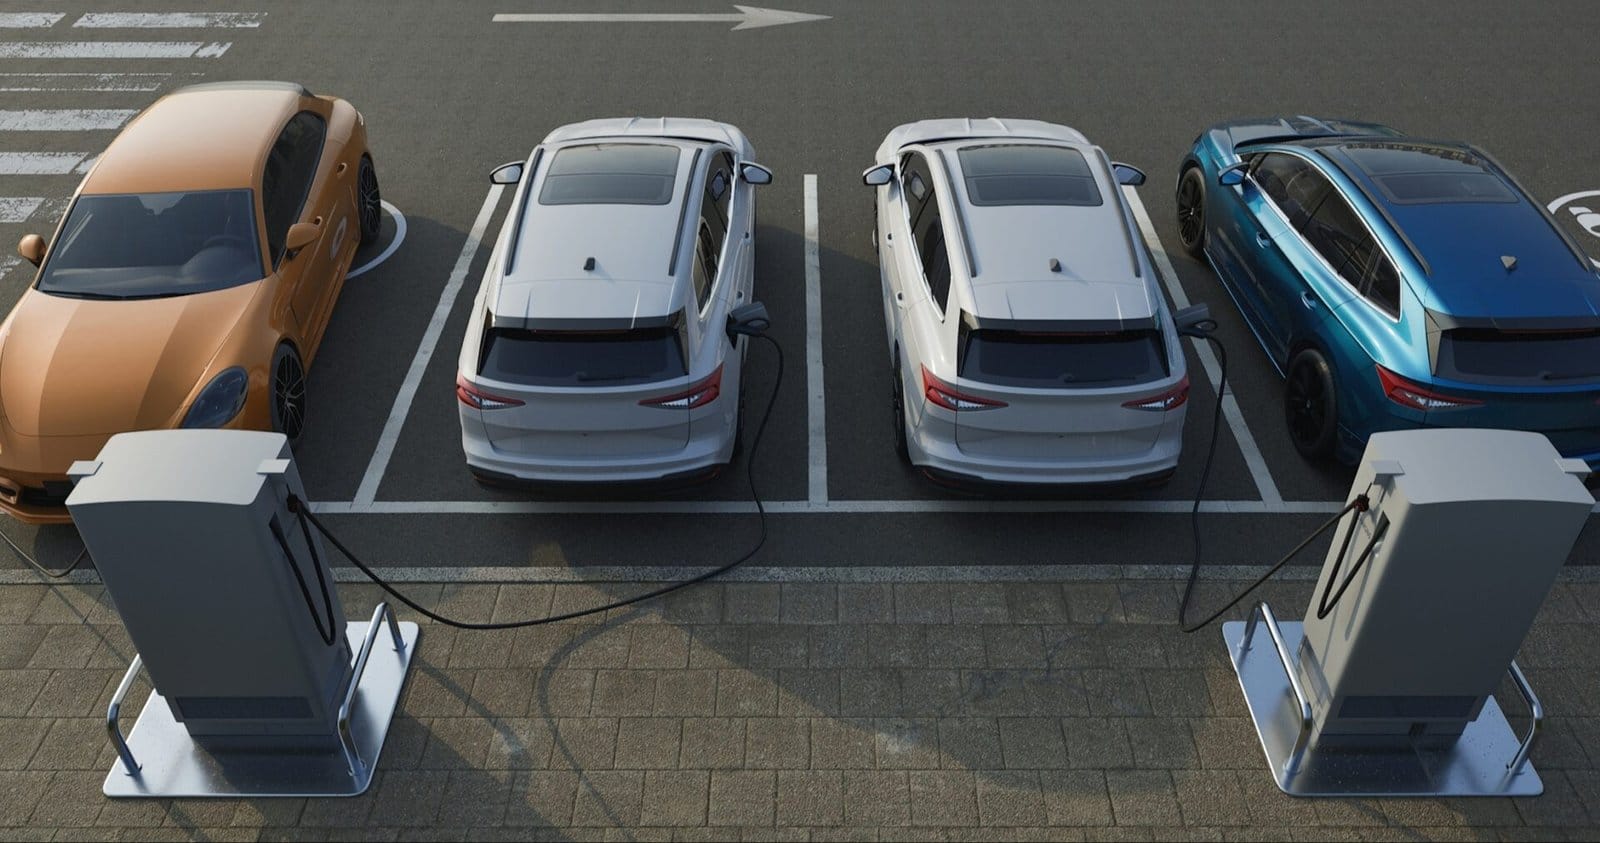 Volvo passará a cobrar por recarga de elétricos de outras marcas